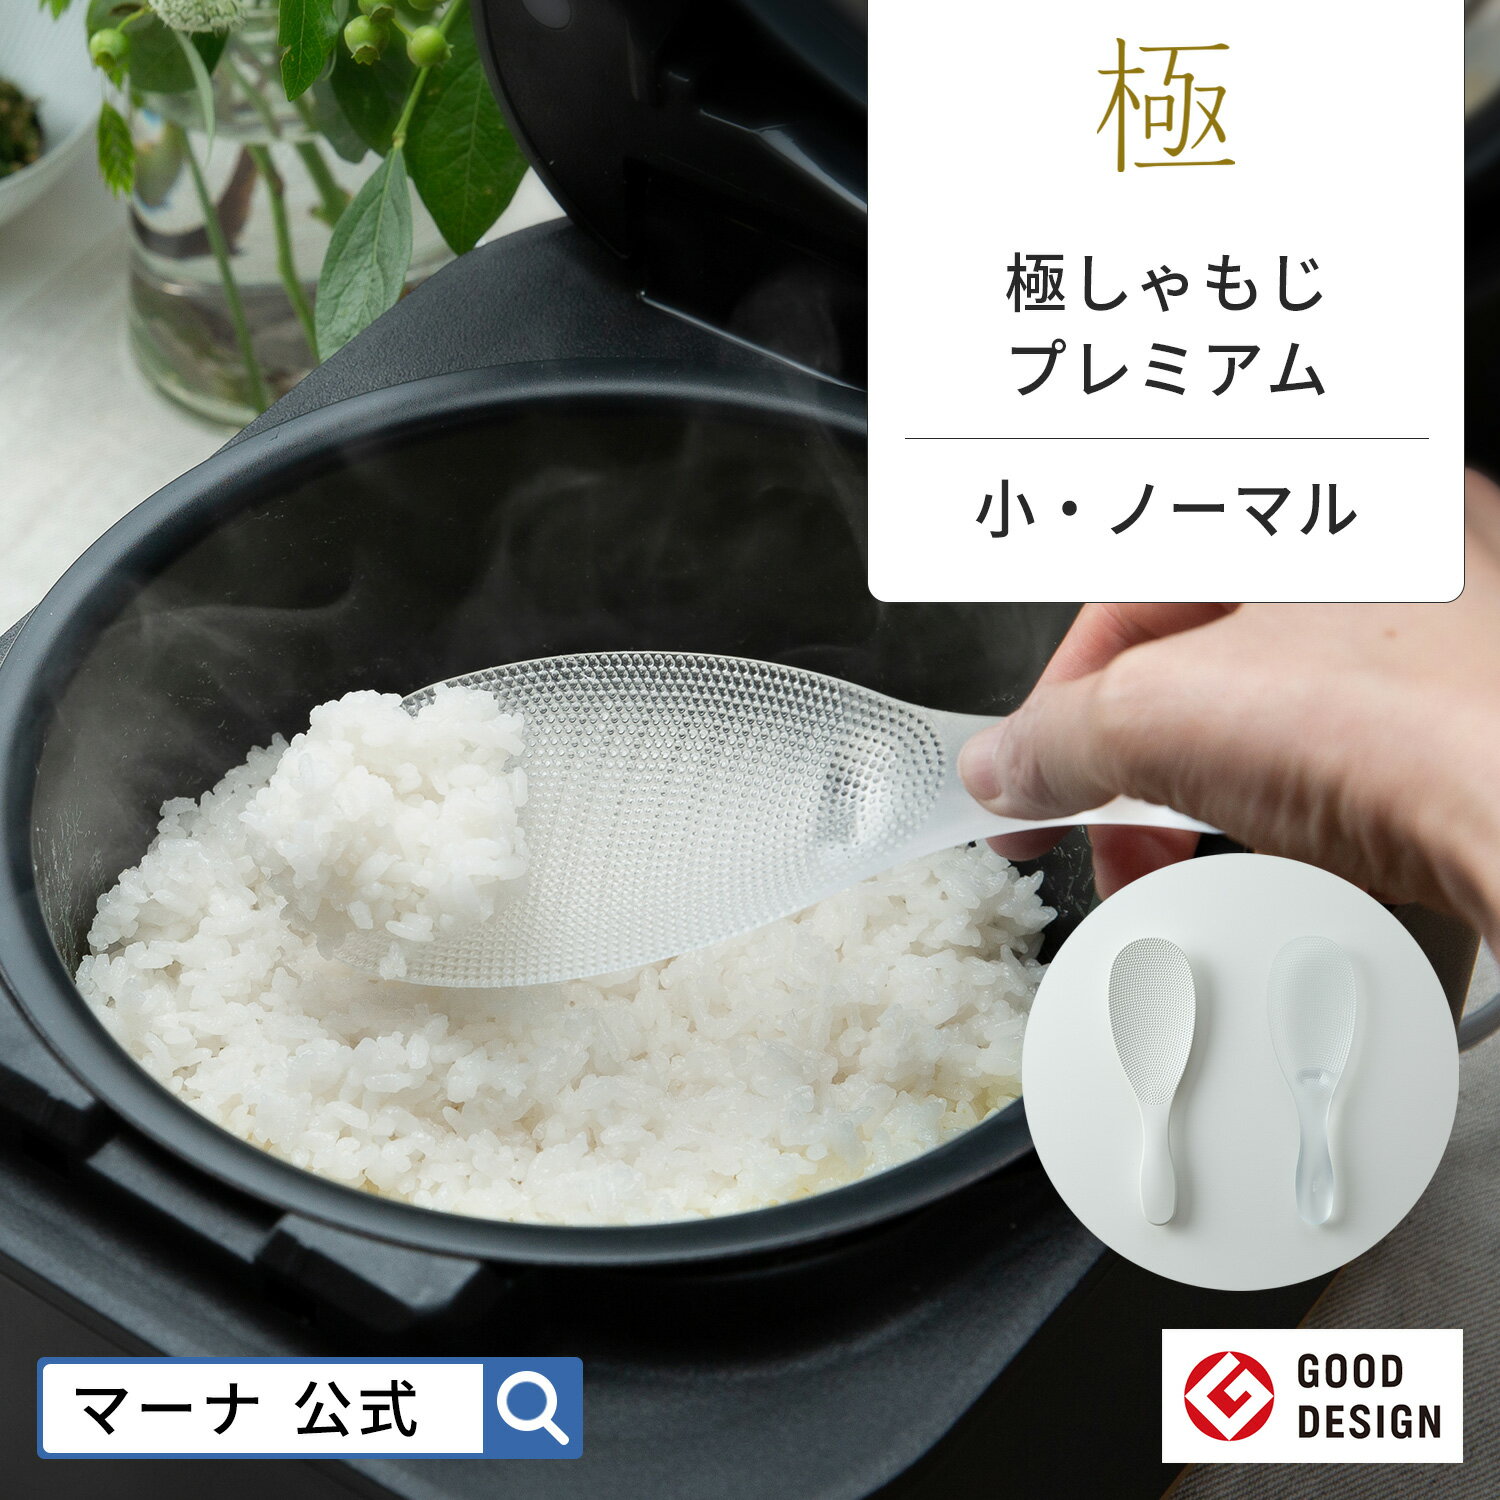 【マーナ公式】 極しゃもじ プレミアム K674・K743・| メール便 食洗機対応 くっつかない ご飯がつかない 極み くっつきにくい おしゃれ 日本製 国産 プレミアムクリア ホワイト 透明 キッチン…